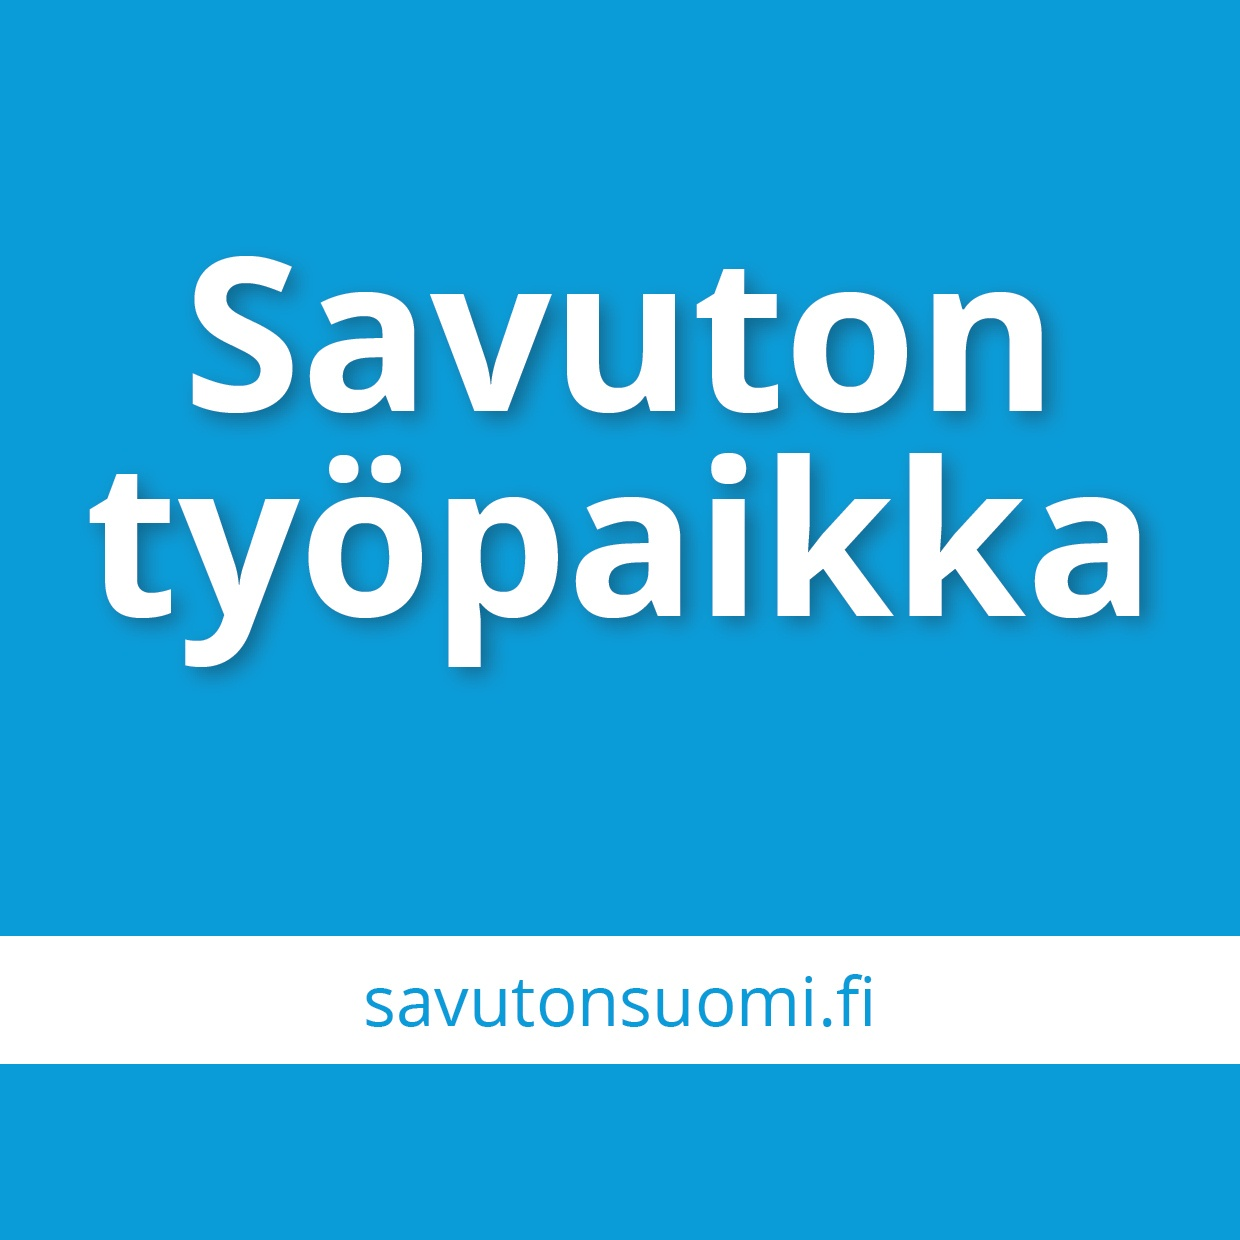 Borgå stad - Savuton työpaikka